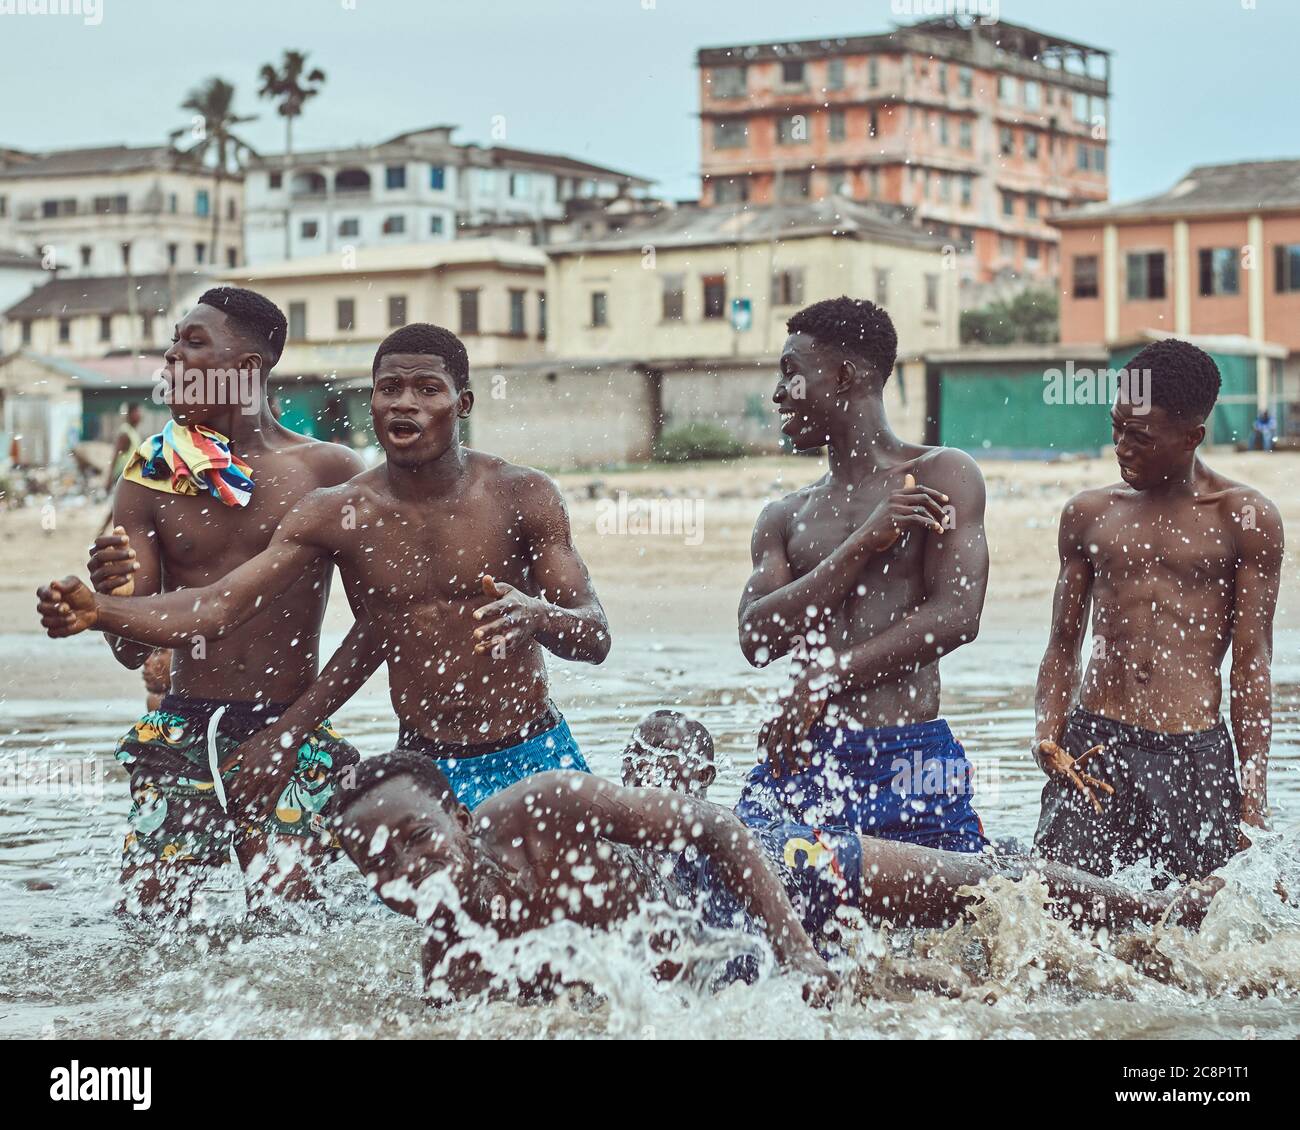 Jugendliche Jungen spielen in einem Fluss während Covd-19 Pandemie. Stockfoto